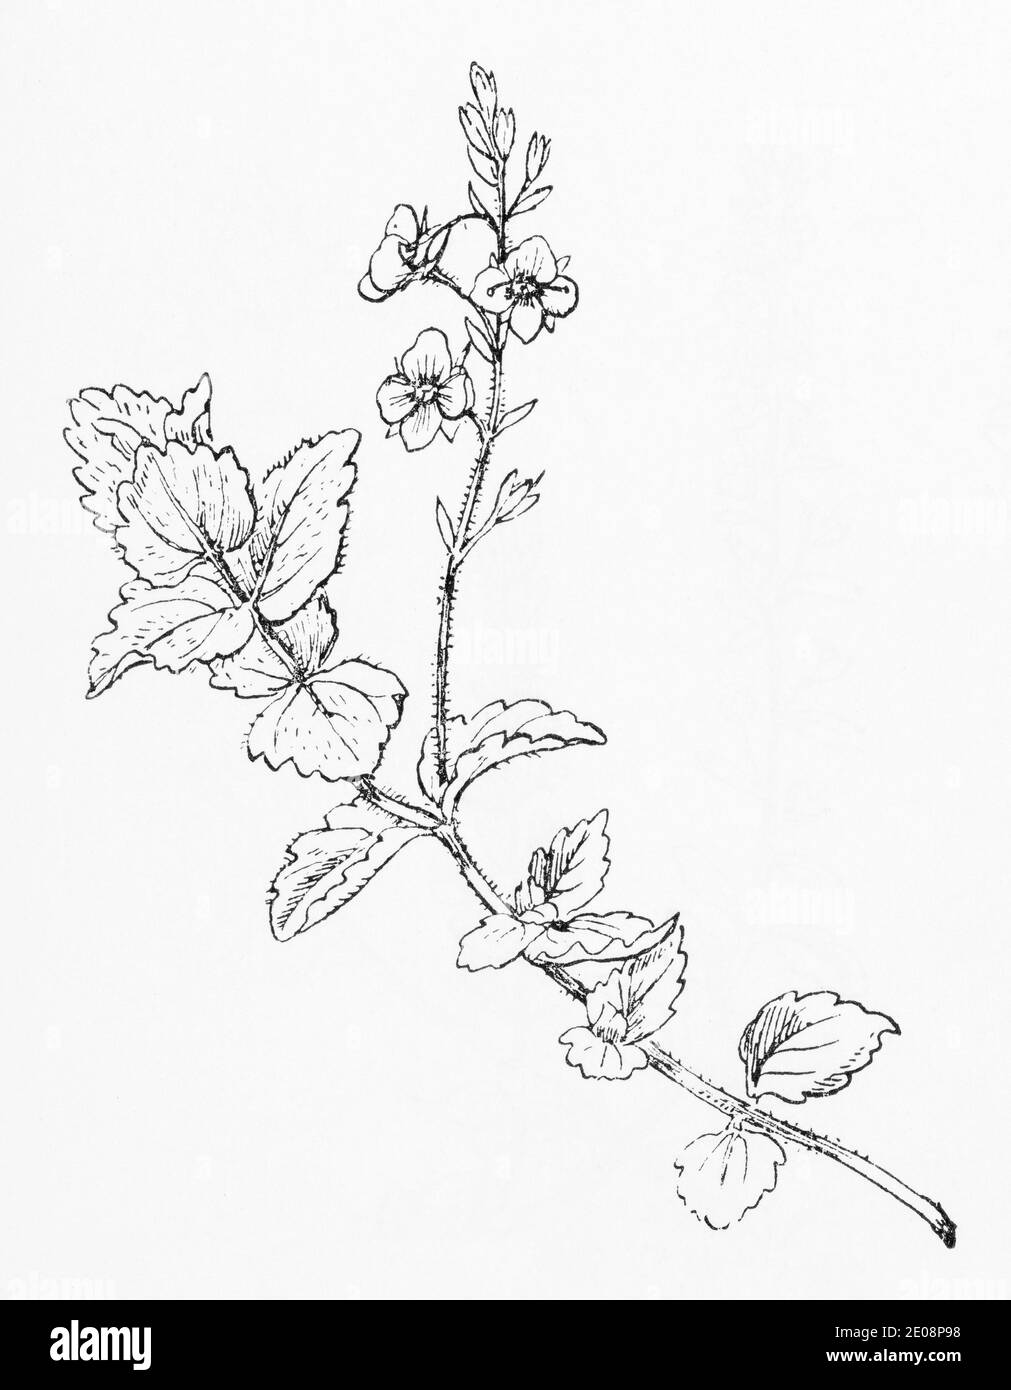 Ancienne gravure d'illustration botanique de Veronica chamaedrys / Germander Speedwell. Plante médicinale traditionnelle. Voir Remarques Banque D'Images